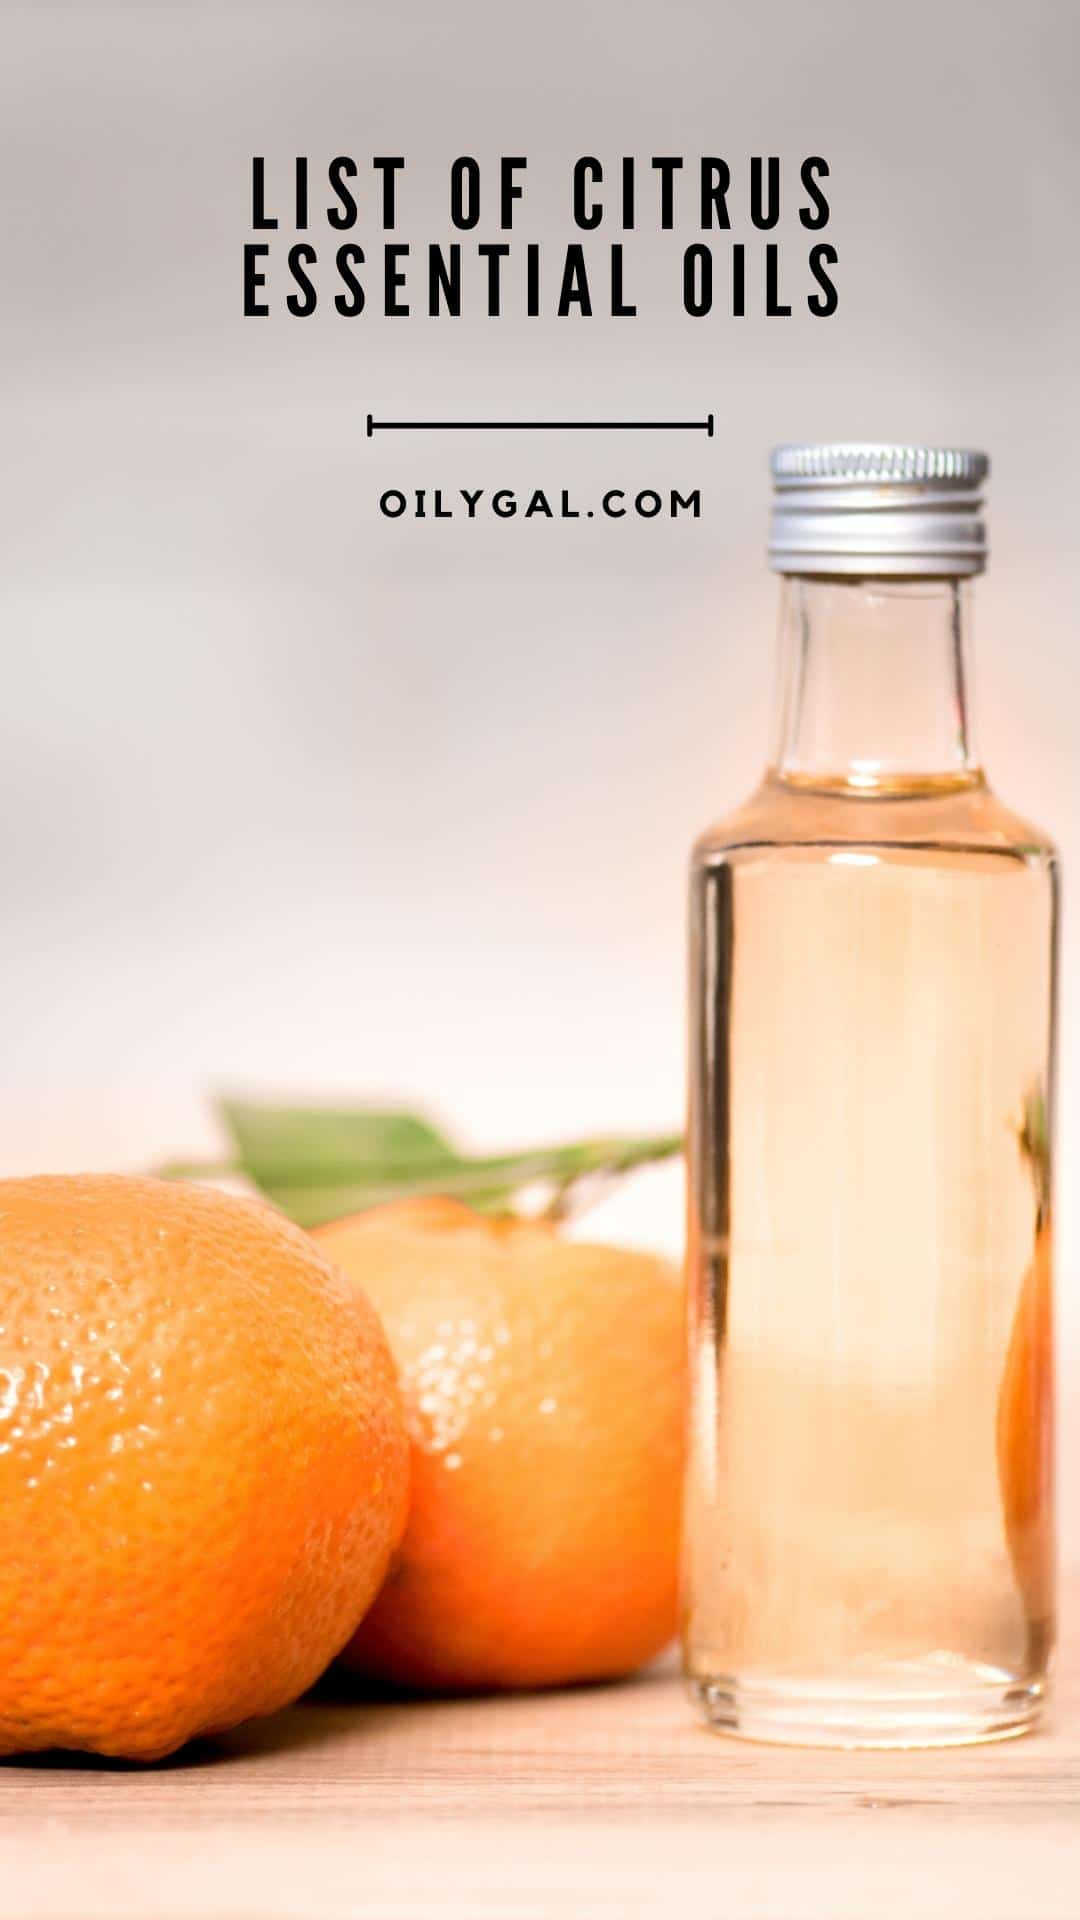 List of Citrus Essential Oils